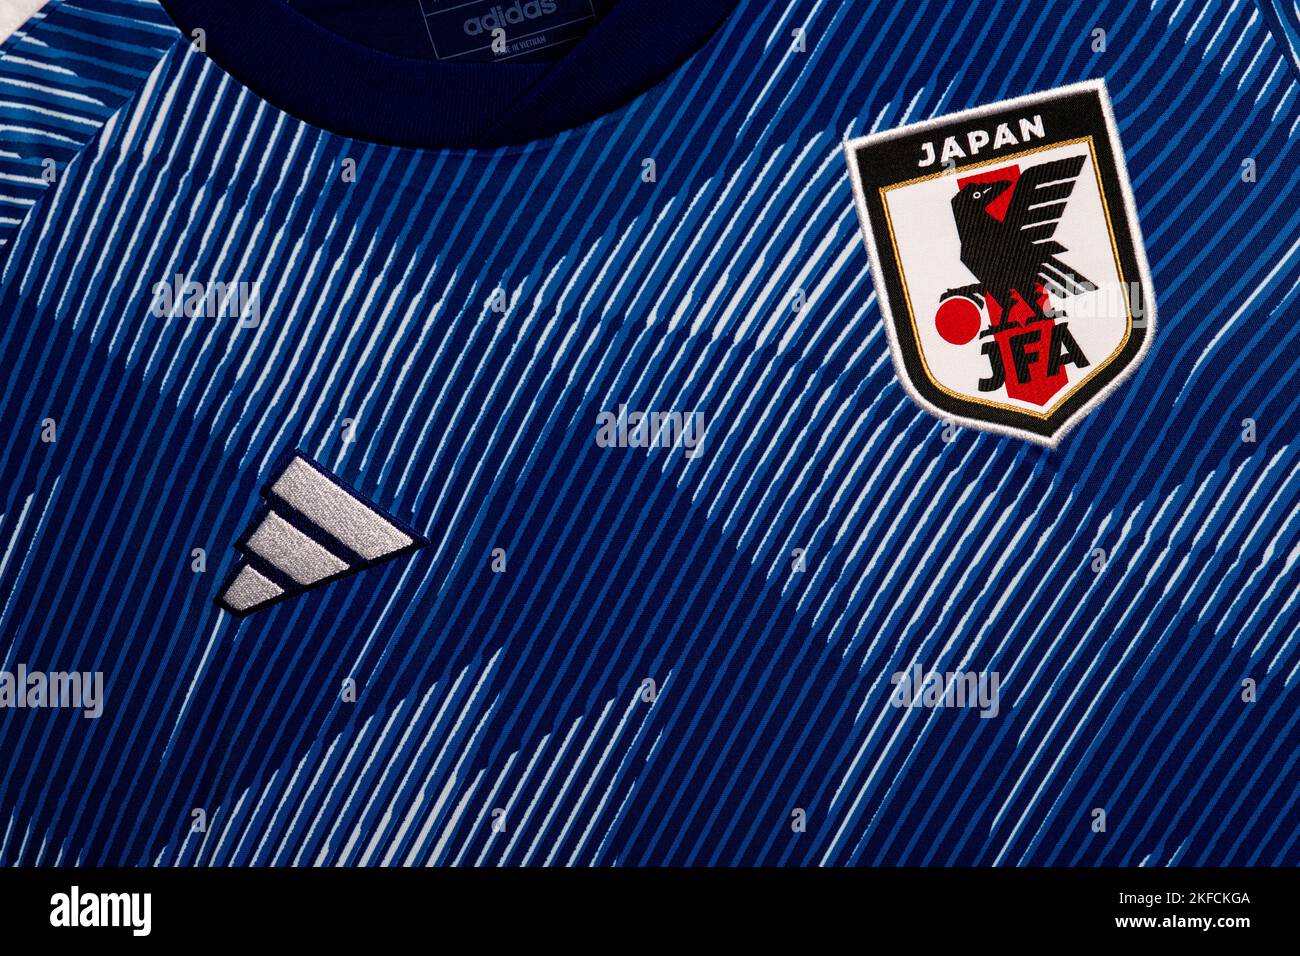 Gros plan sur le maillot de l'équipe nationale de football du Japon. Coupe du monde de la FIFA 2022 Qatar. Banque D'Images